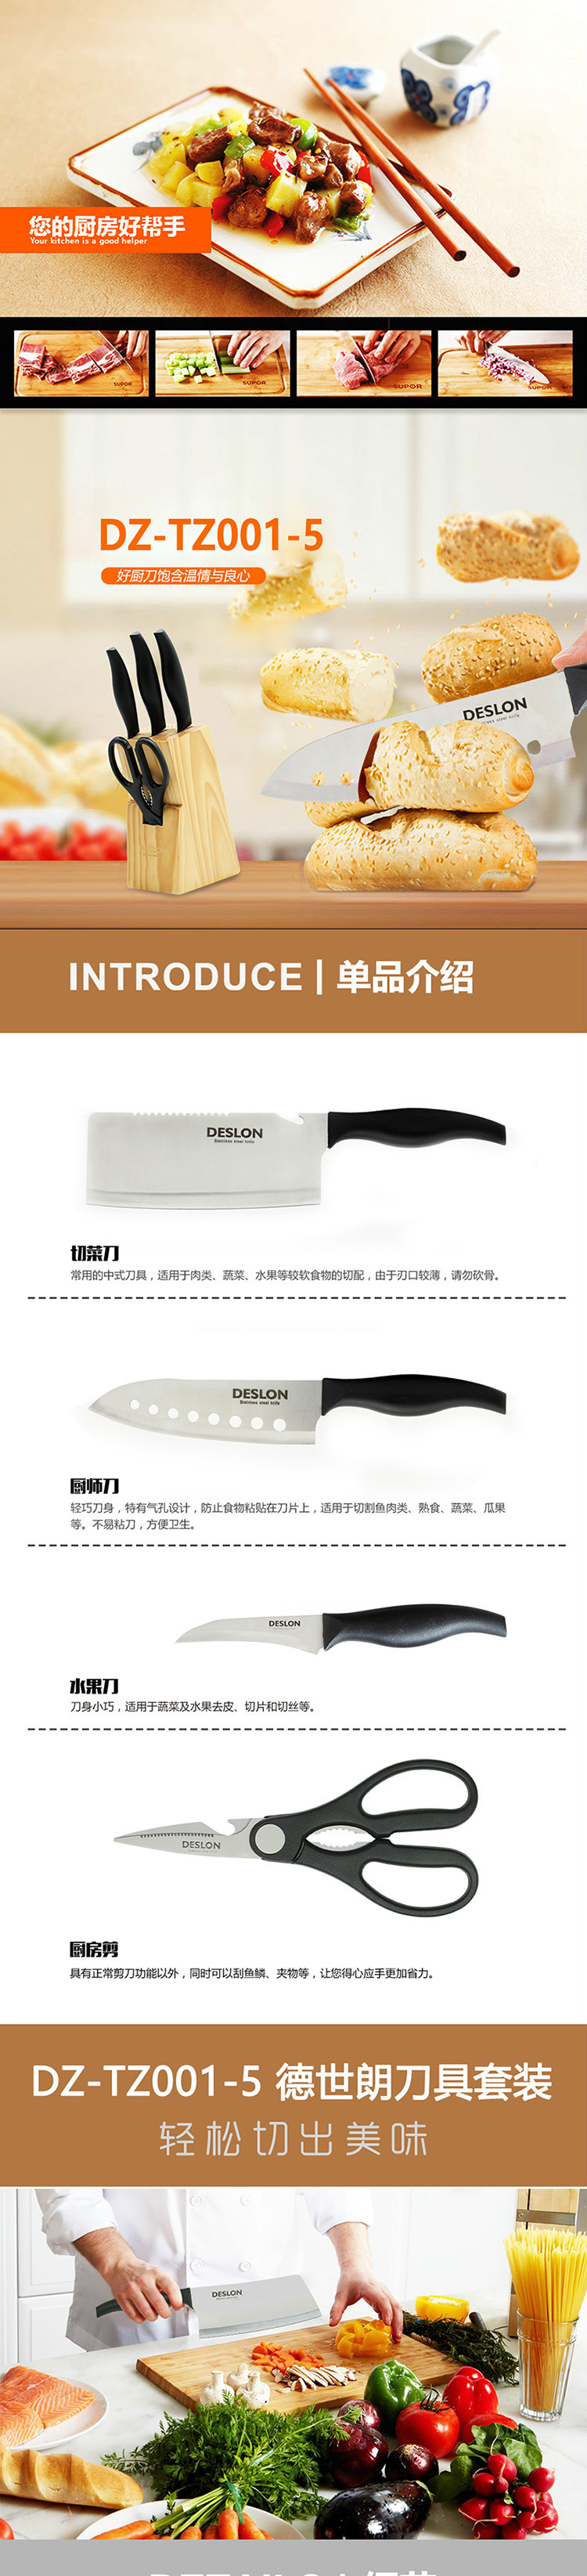 切菜刀、厨师刀、厨房剪、水果刀、刀座  经典刀具套装DZ-TZ001-5